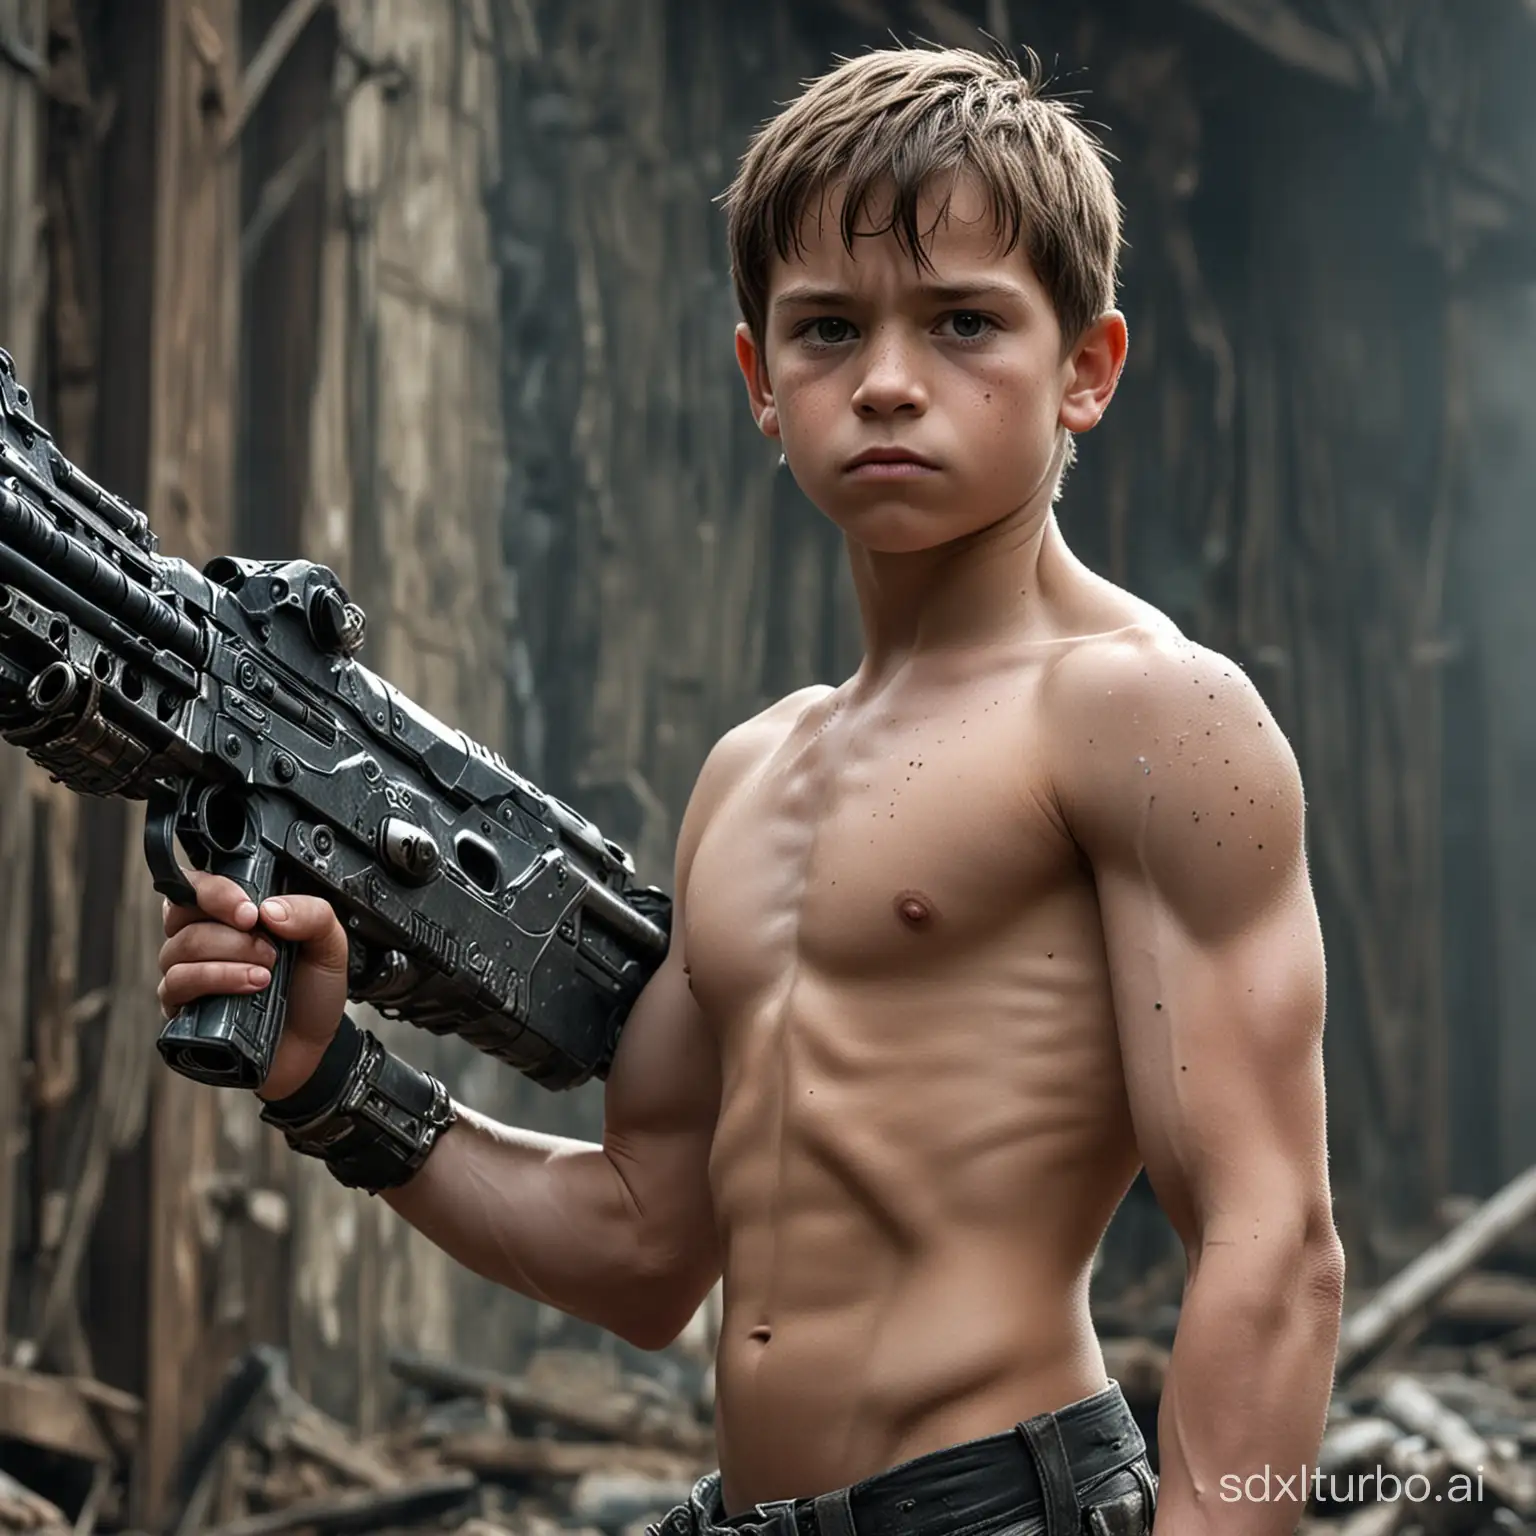 Muscular-Preteen-Boy-with-Shotgun-in-Apocalyptic-Setting-PostApocalyptic-Cyborg-Kid-Image